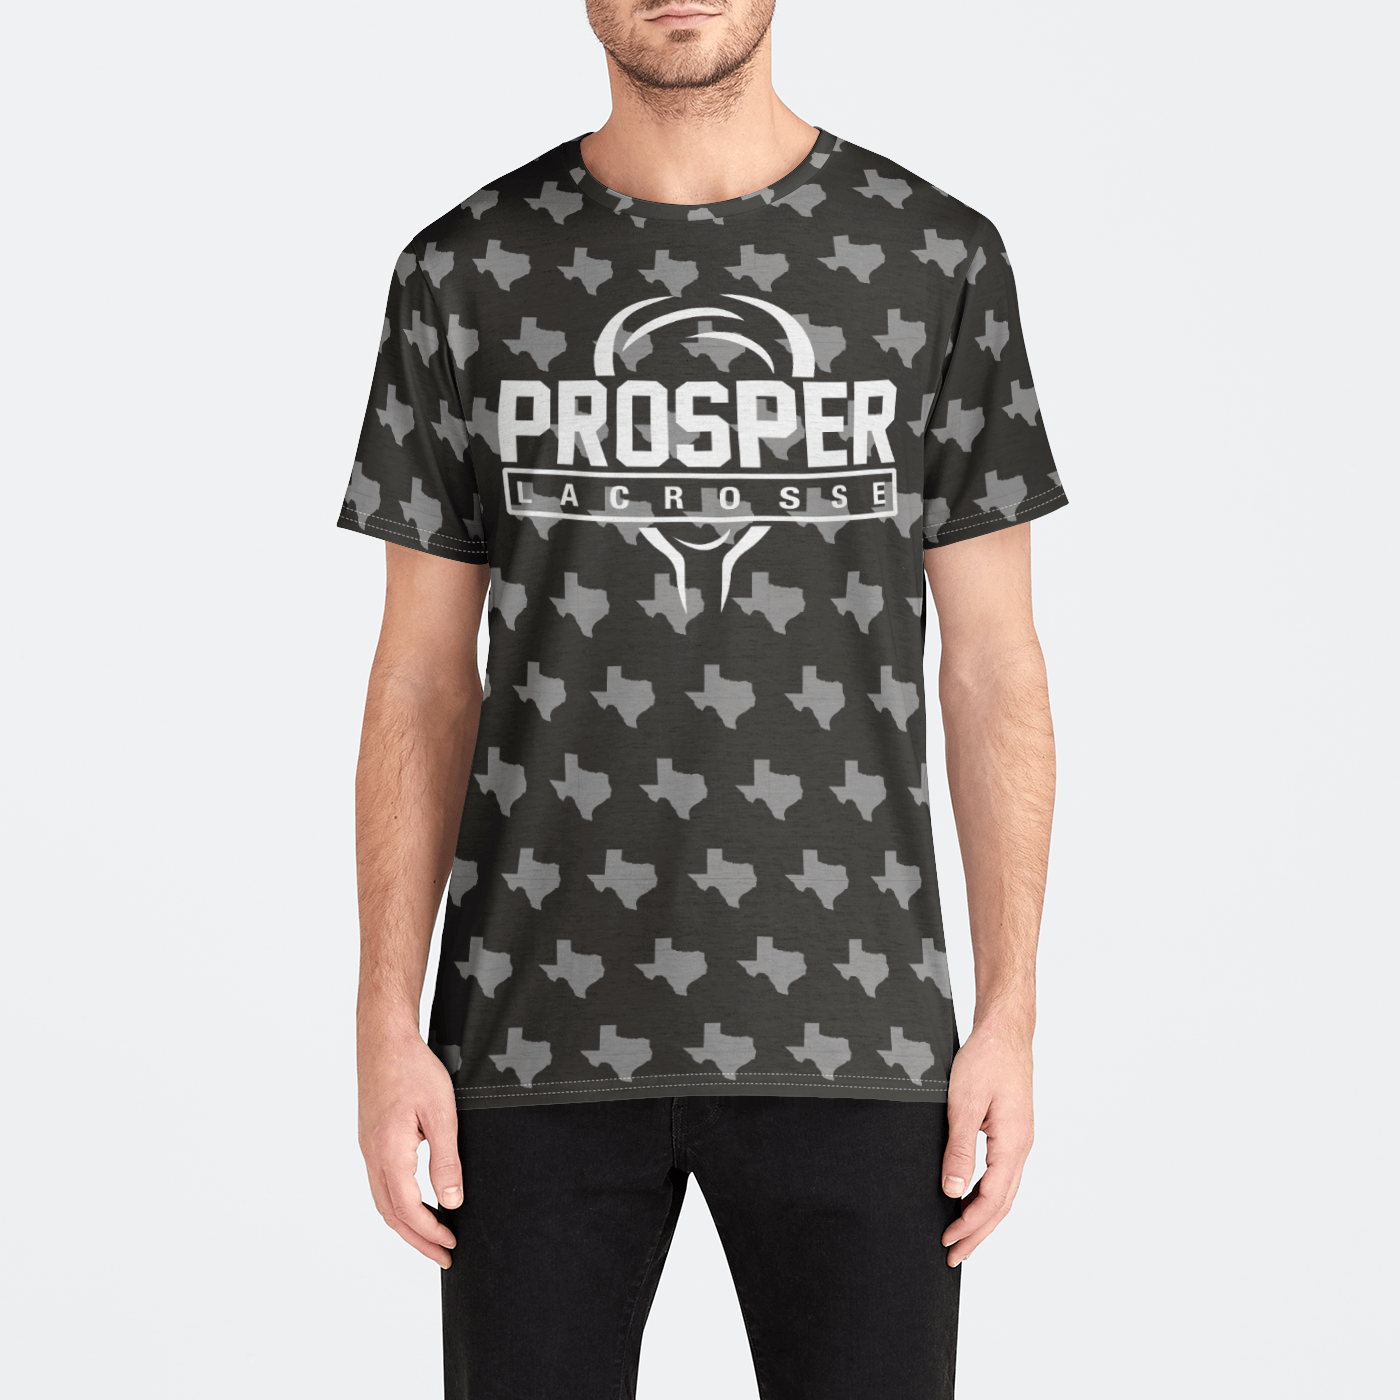 Prosper Youth Lacrosse Athletic T-Shirt (Men's) Signature Lacrosse